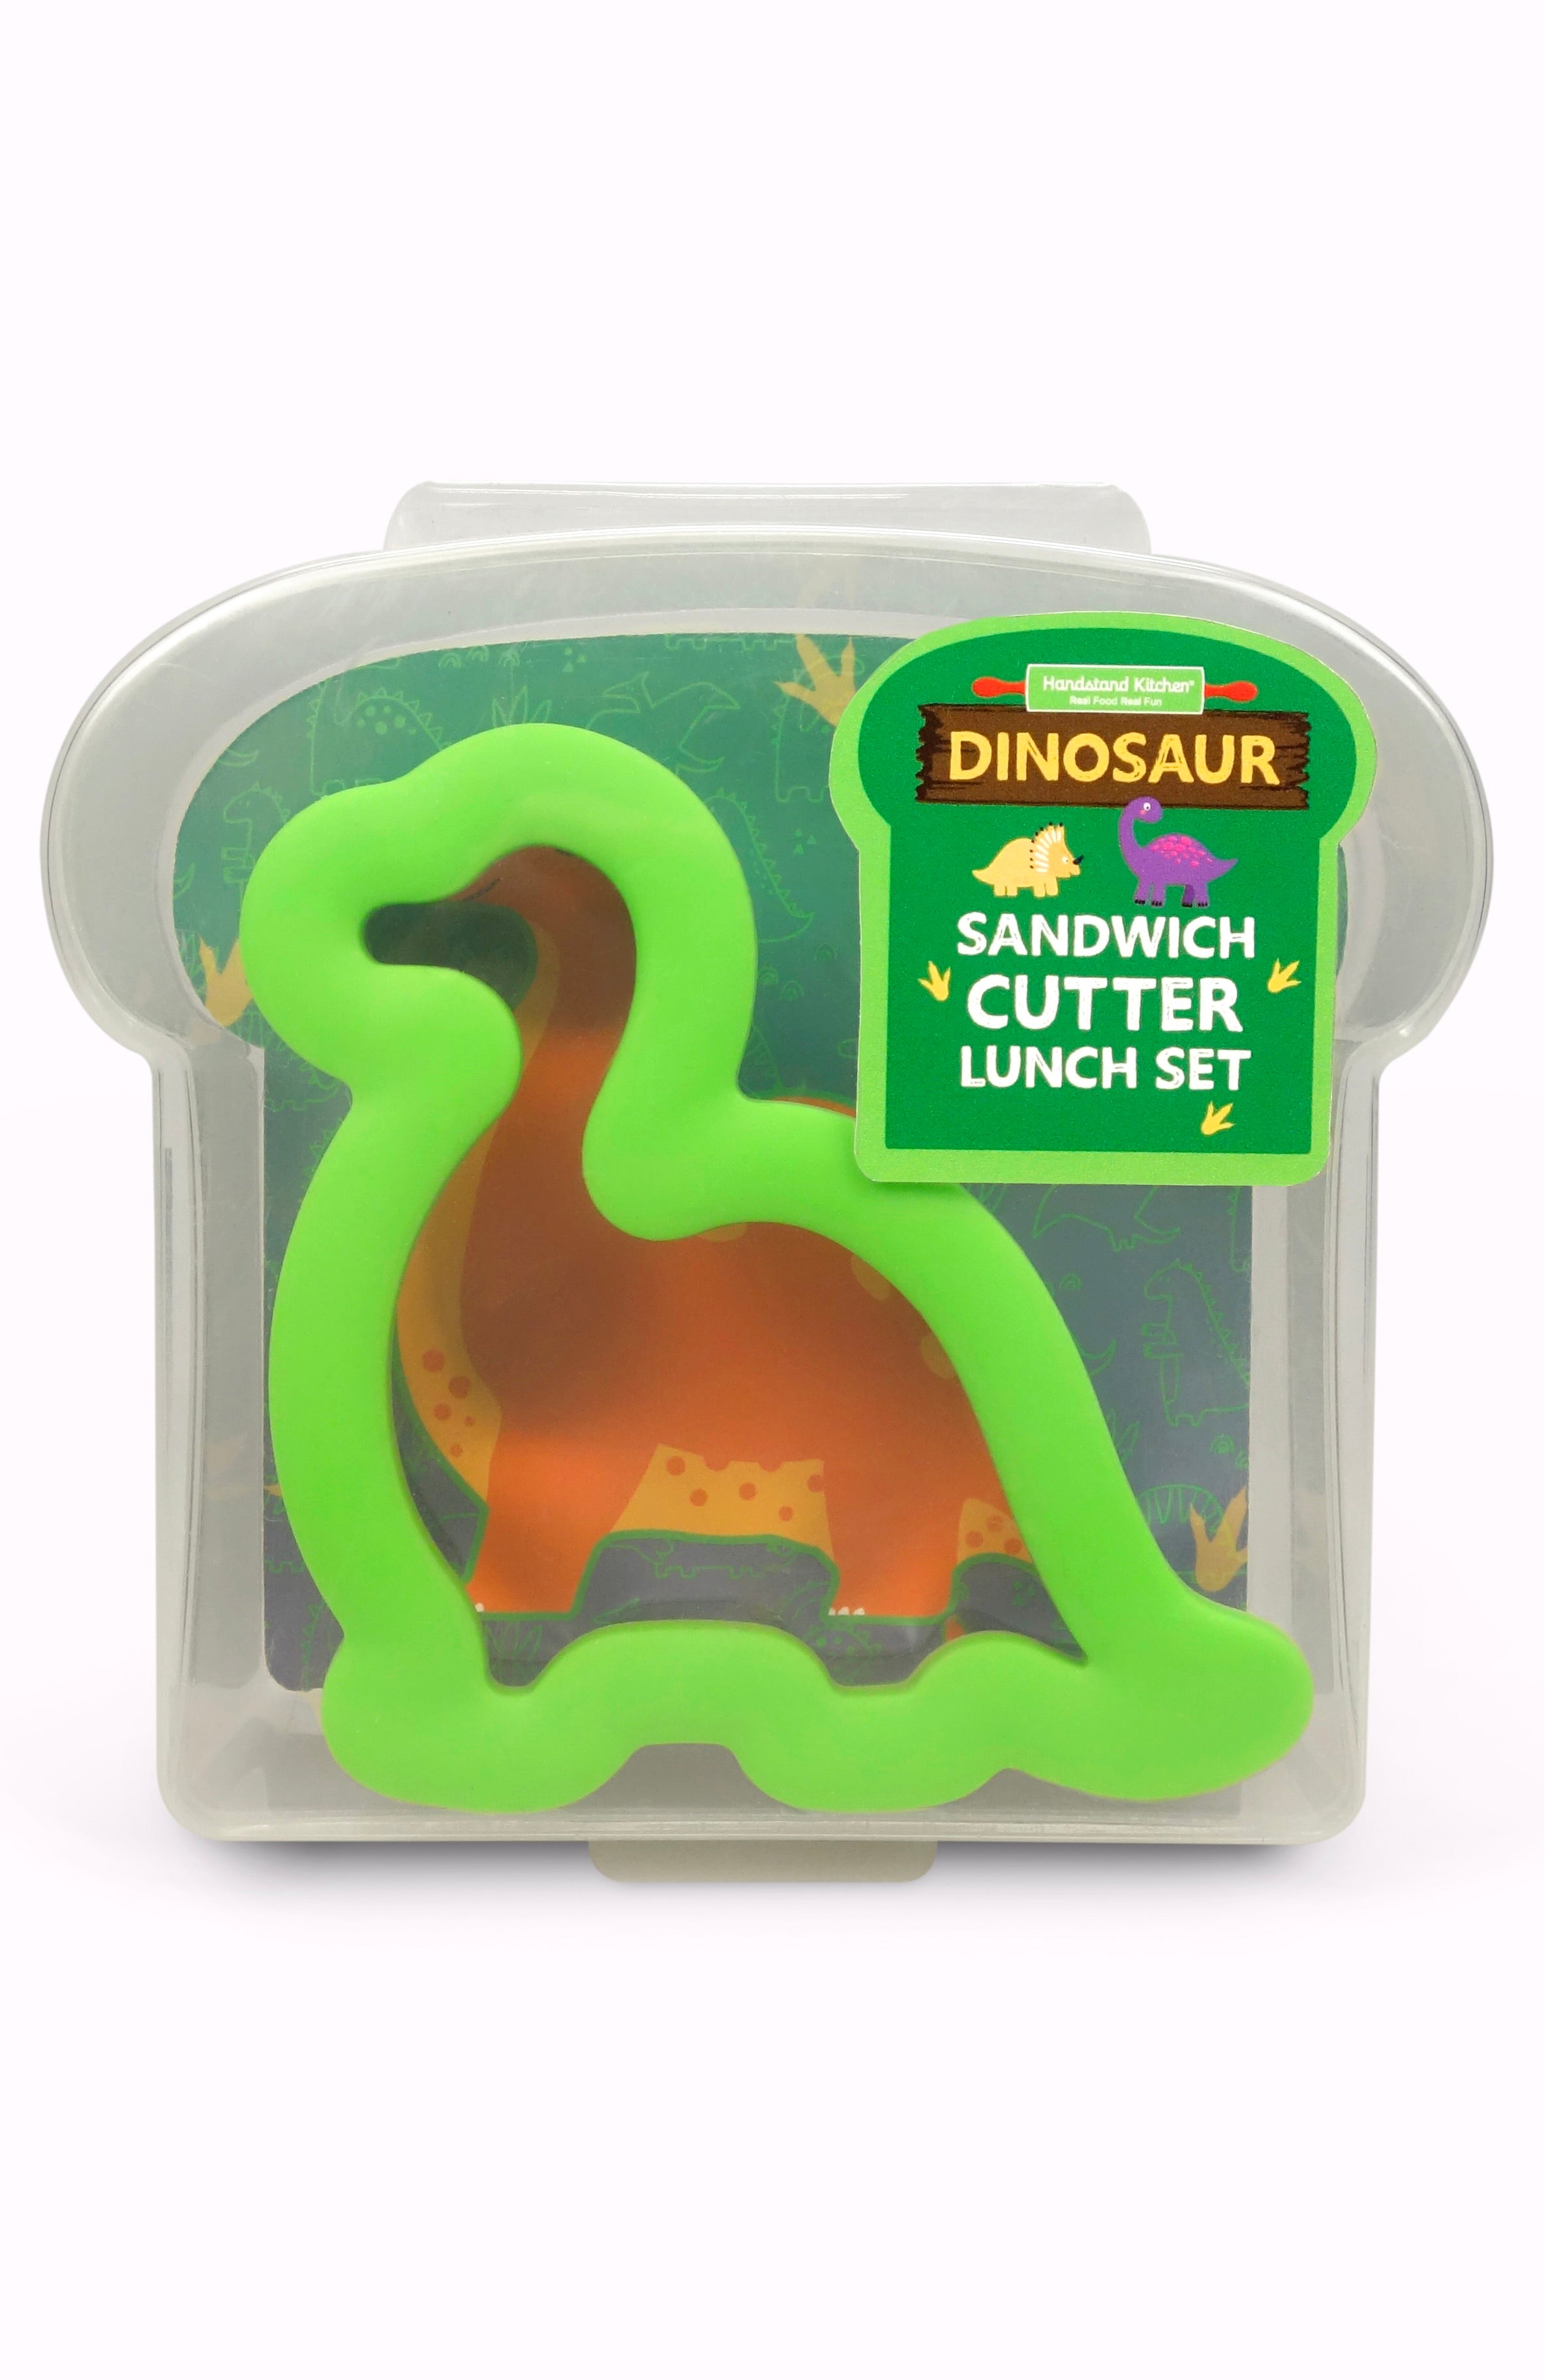 Dinosaur Sandwich Cutter Lunch Set – Handstand Kitchen